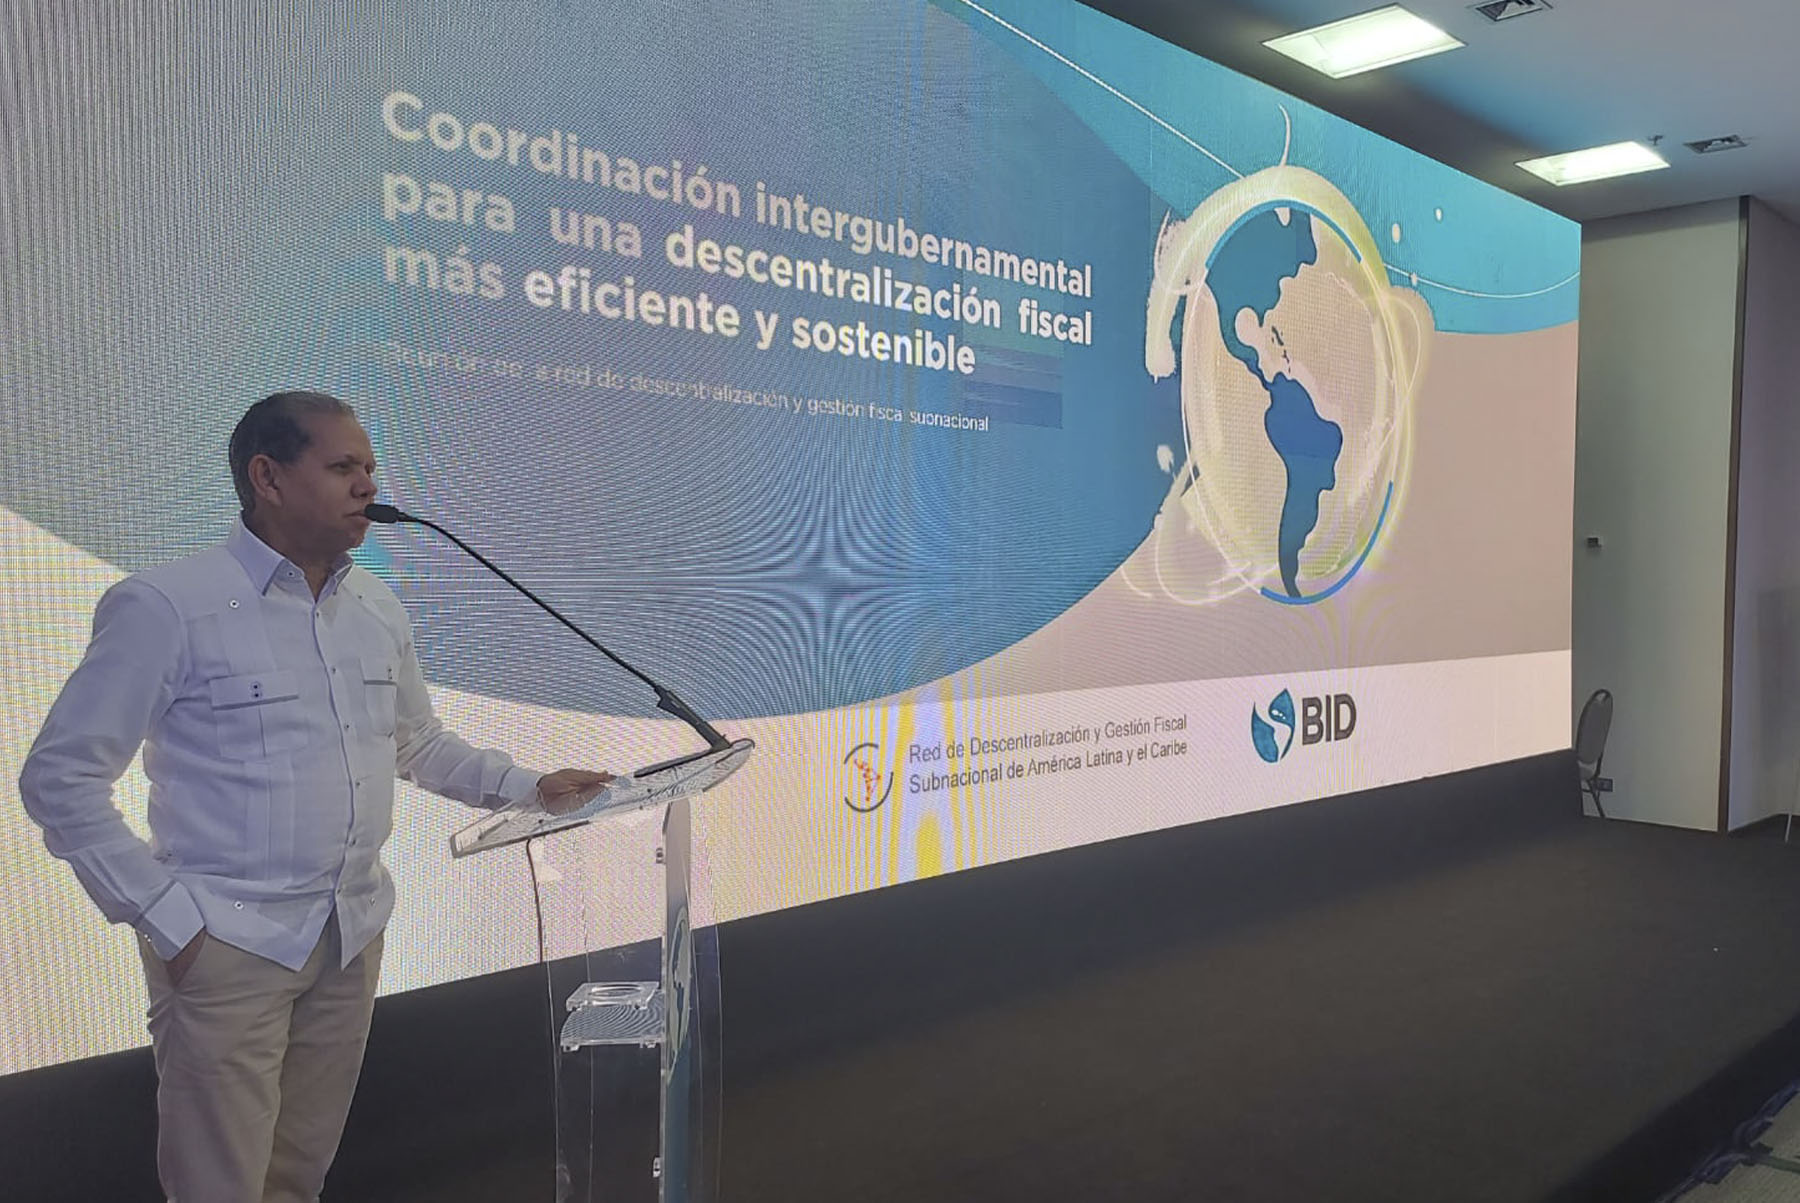 El viceministro de Ordenamiento Territorial y Desarrollo Regional del Ministerio de Economía, Domingo Matías, participa en Brasilia, Brasil, en el Quinto Foro Internacional de la Red de Descentralización y Gestión Fiscal Subnacional de América Latina y el Caribe.